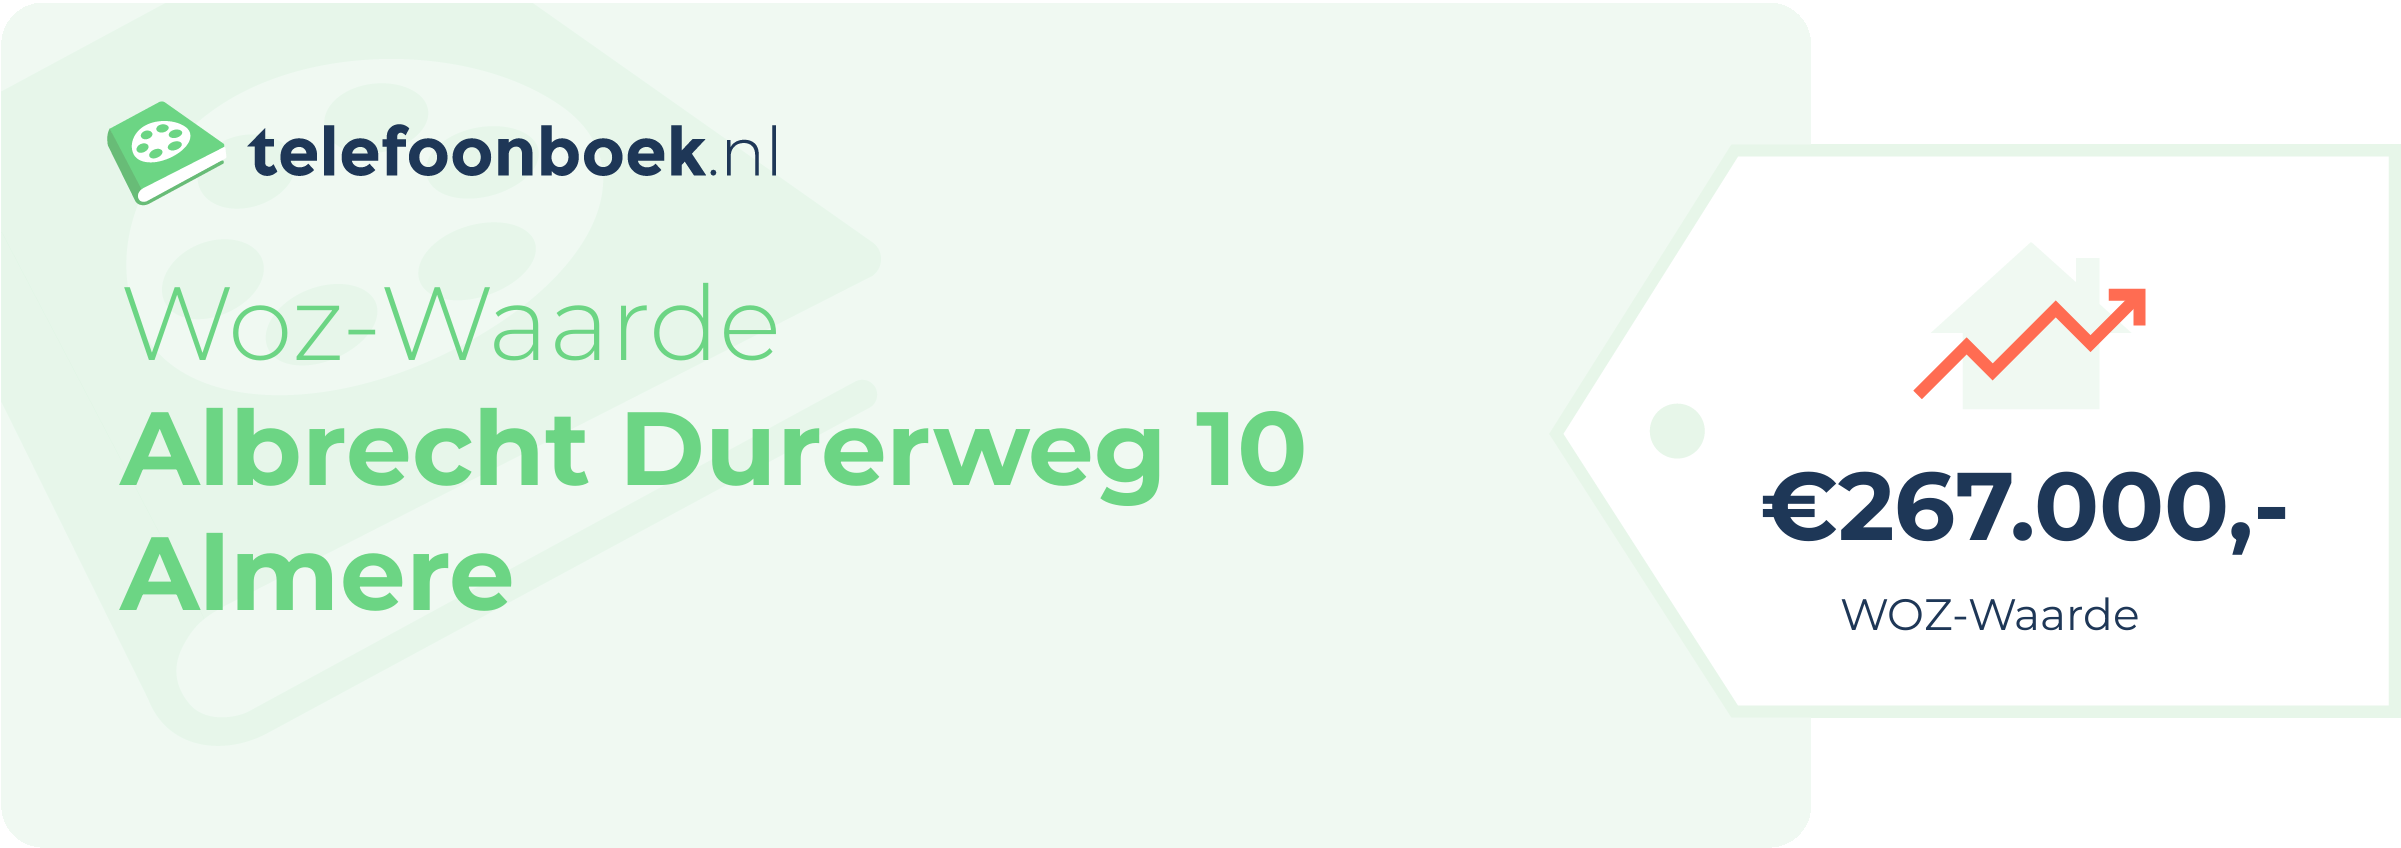 WOZ-waarde Albrecht Durerweg 10 Almere